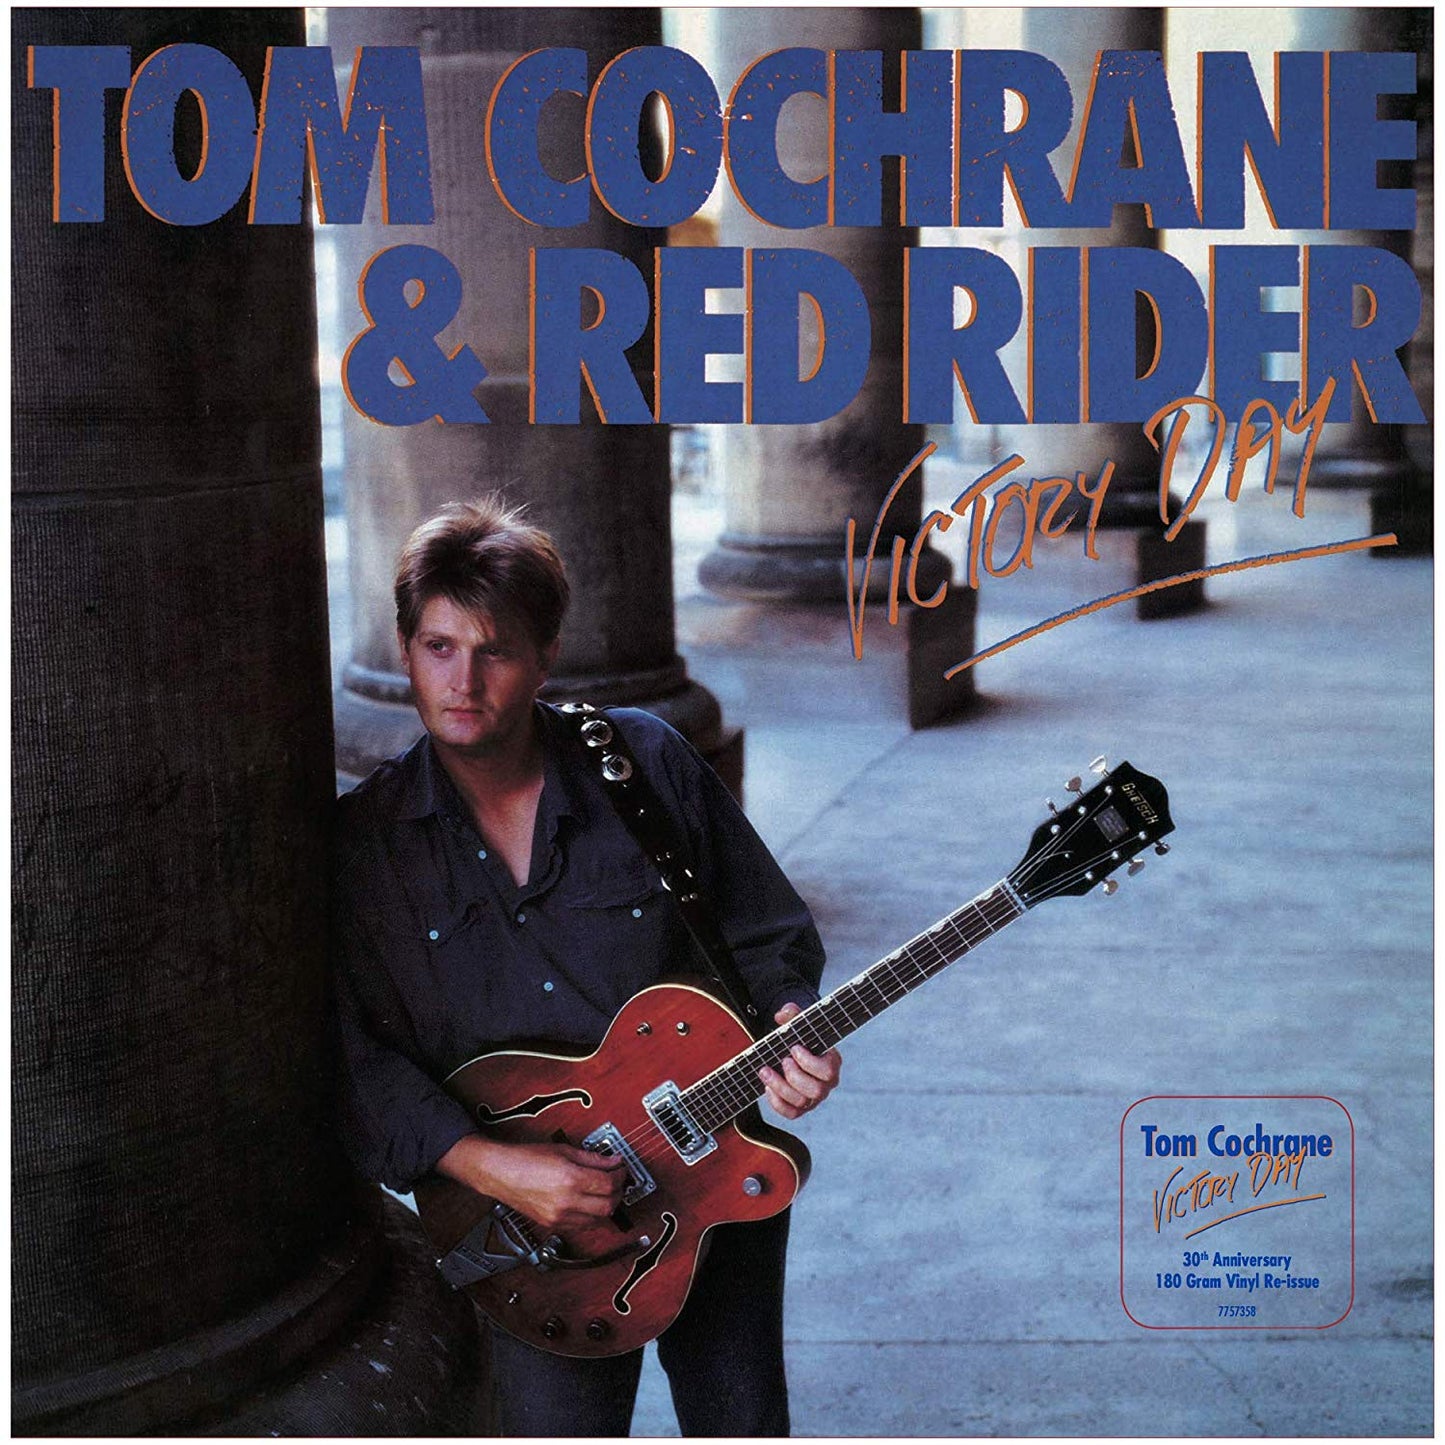 Tom Cochrane & Red Rider - Victory Day - LP